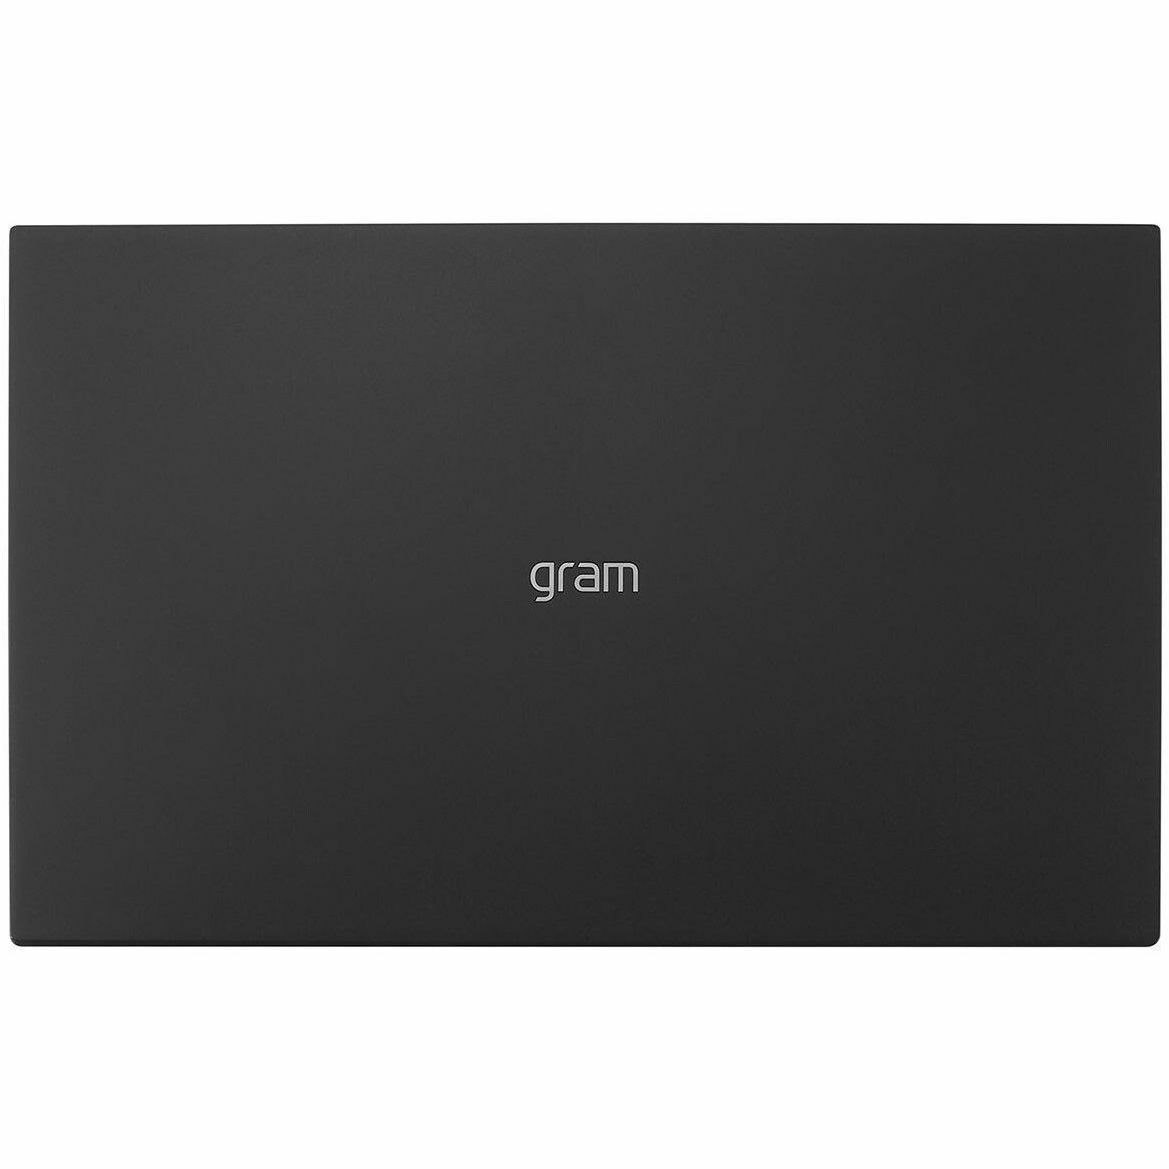 LG gram 15Z90R-Q.APB7U1 15" Notebook - Intel Core i7 - 16 GB Total RAM - 1 TB SSD